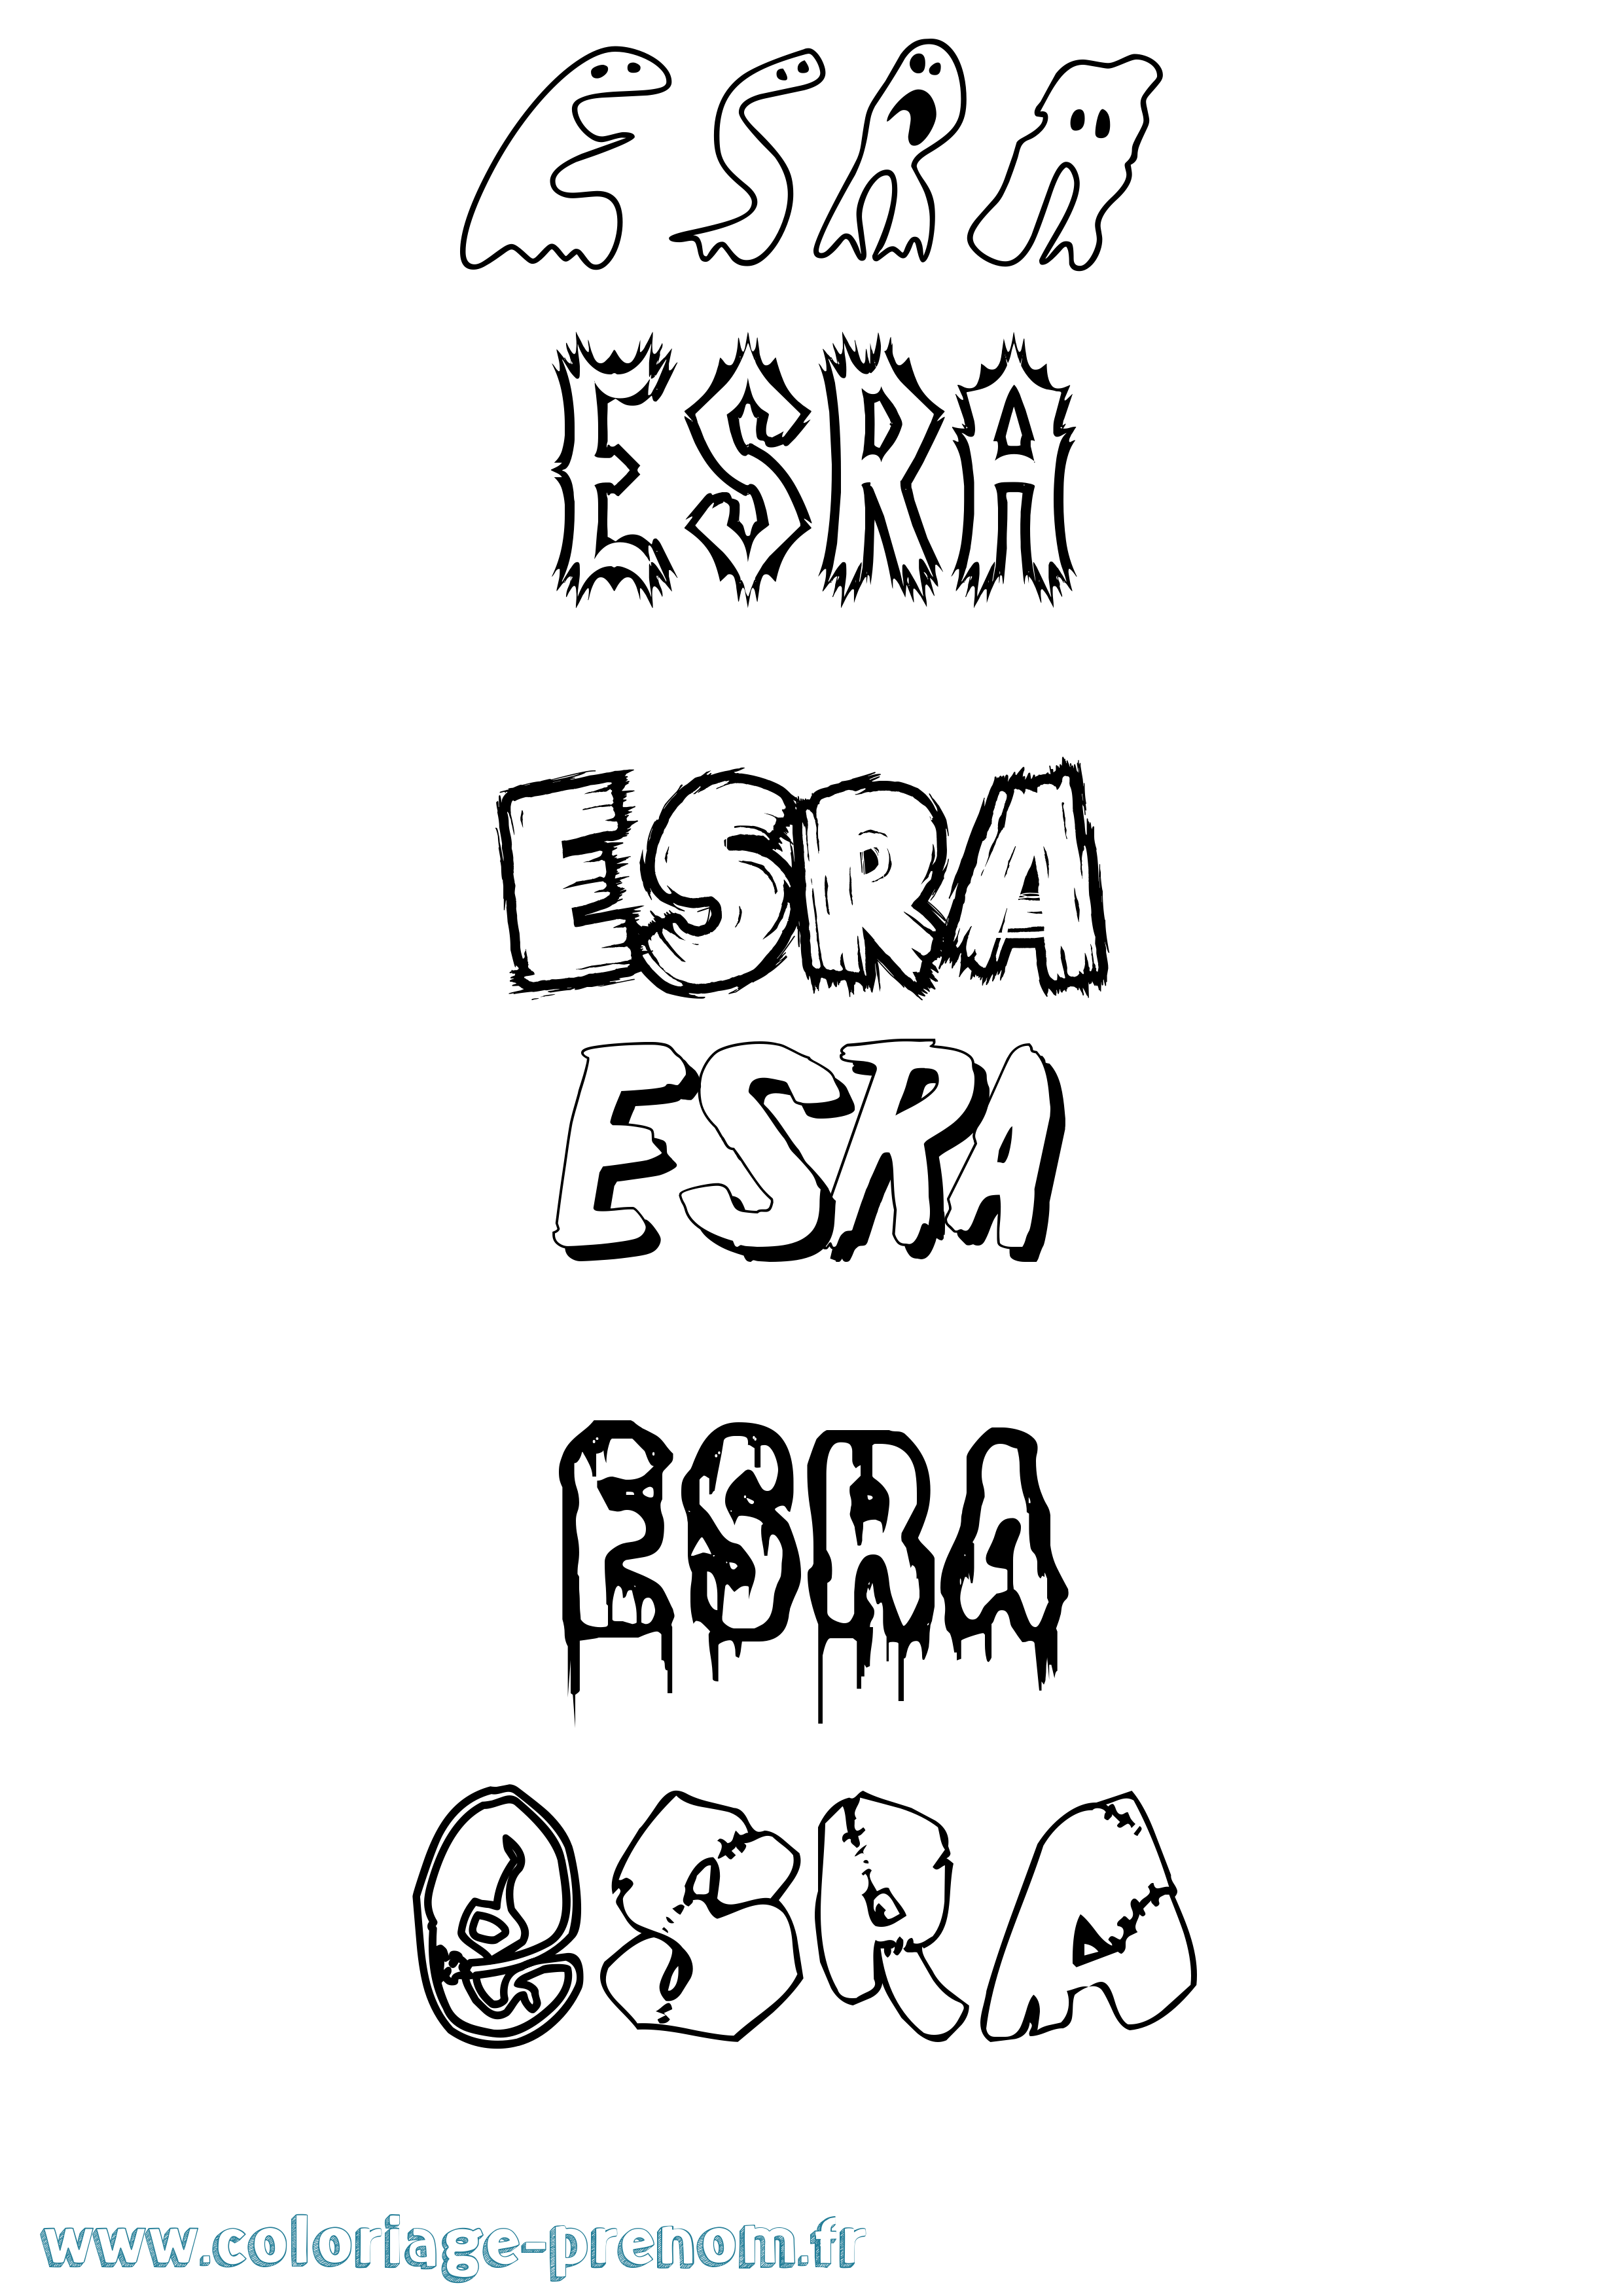 Coloriage prénom Esra Frisson